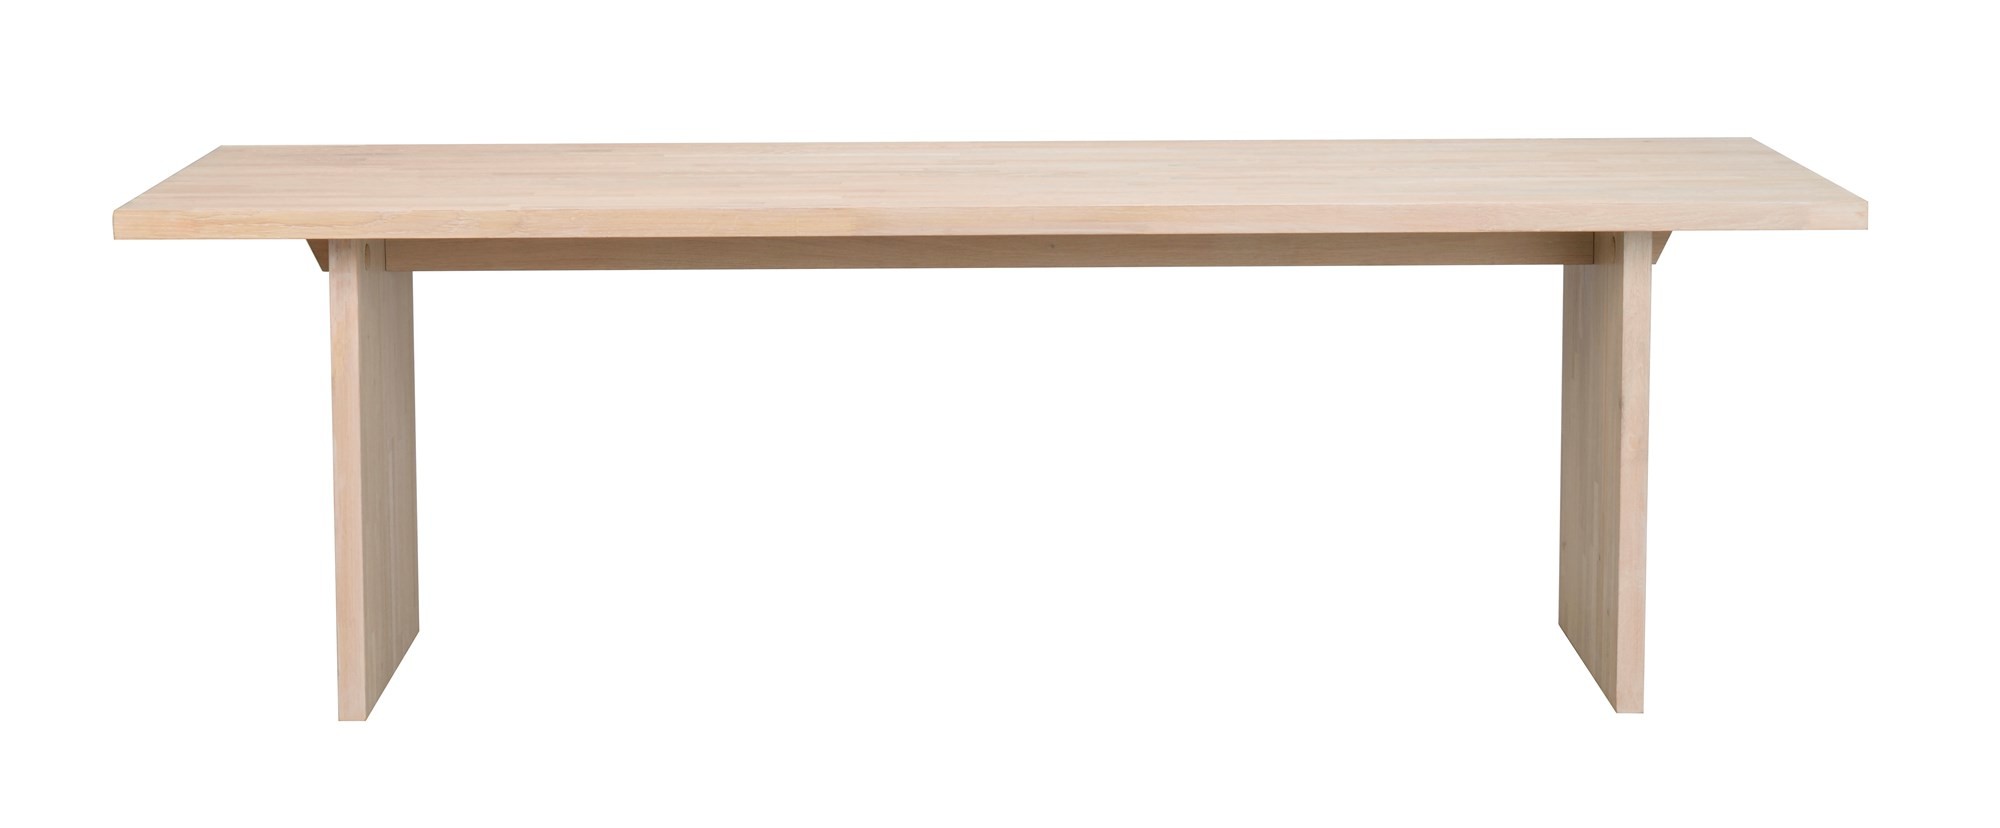 Stół Emmett 240x95 cm, bielony